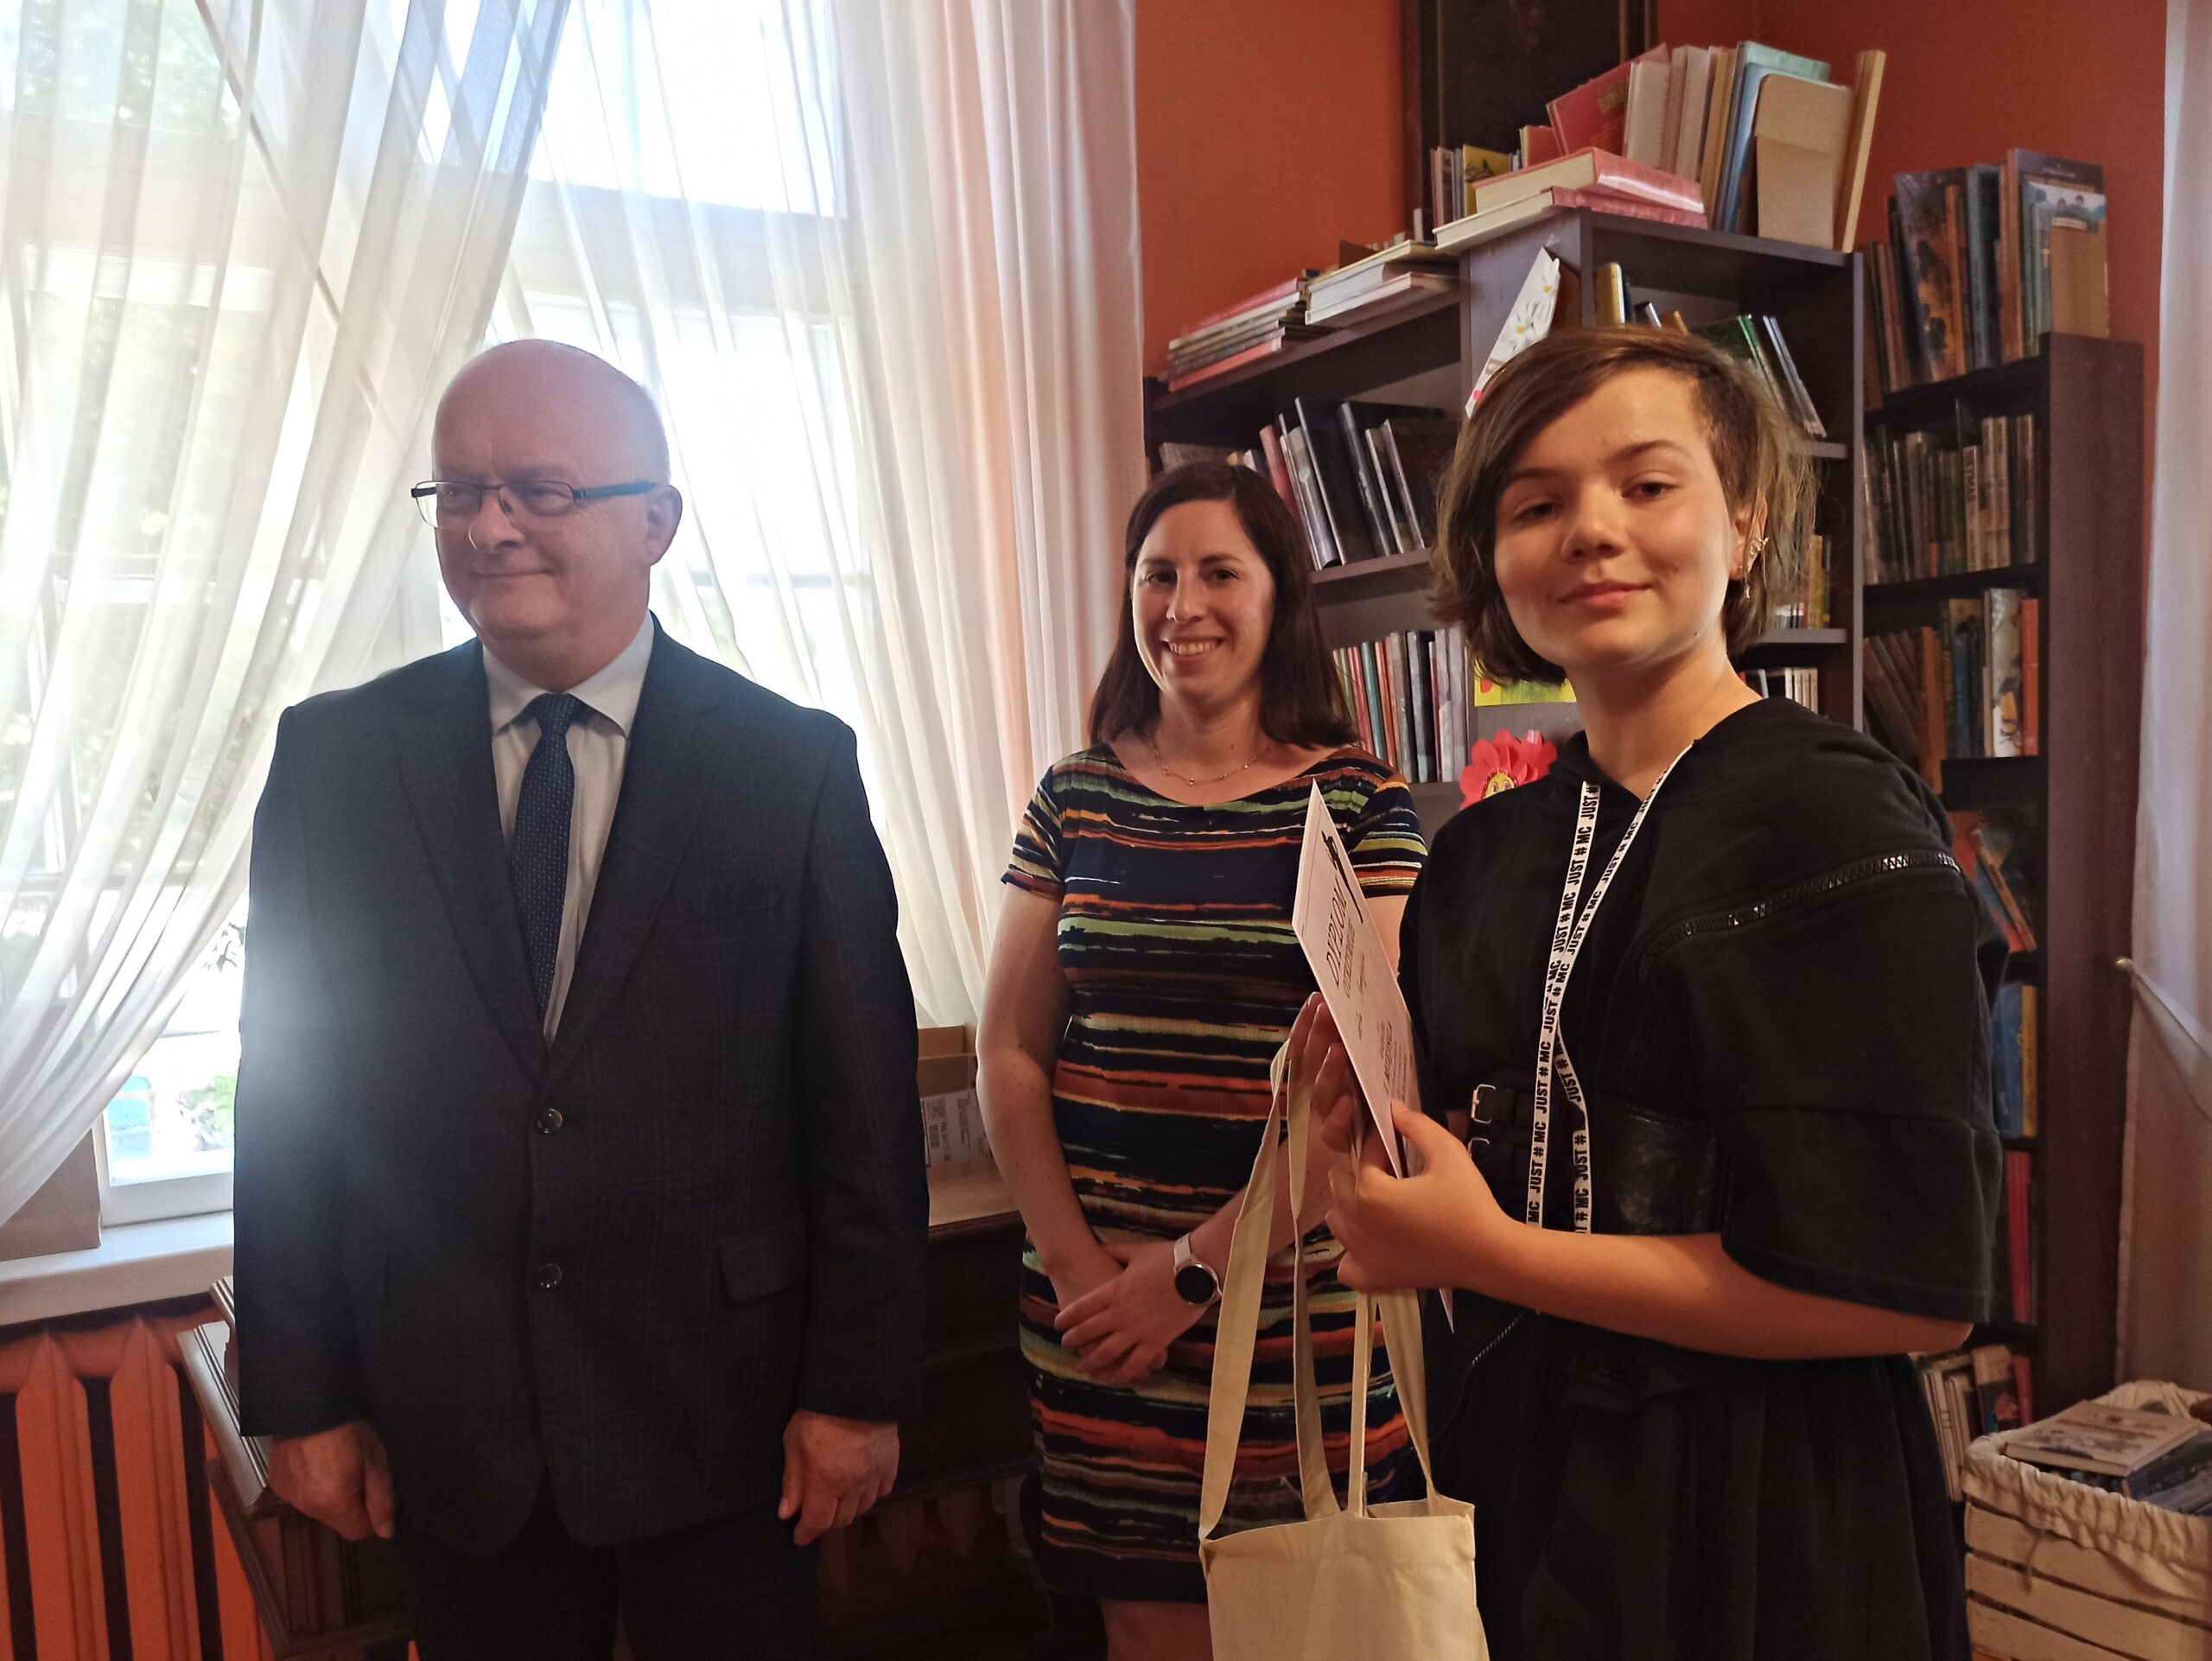 Dziewczynka oraz Starosta Marian Cichon i Natalia Błońska z Zarządu Powiatu Gdańskiego stoją razem i uśmiechają się. Dziewczynka trzyma w rękach dyplom oraz torbę materiałową. W tle regały z książkami.